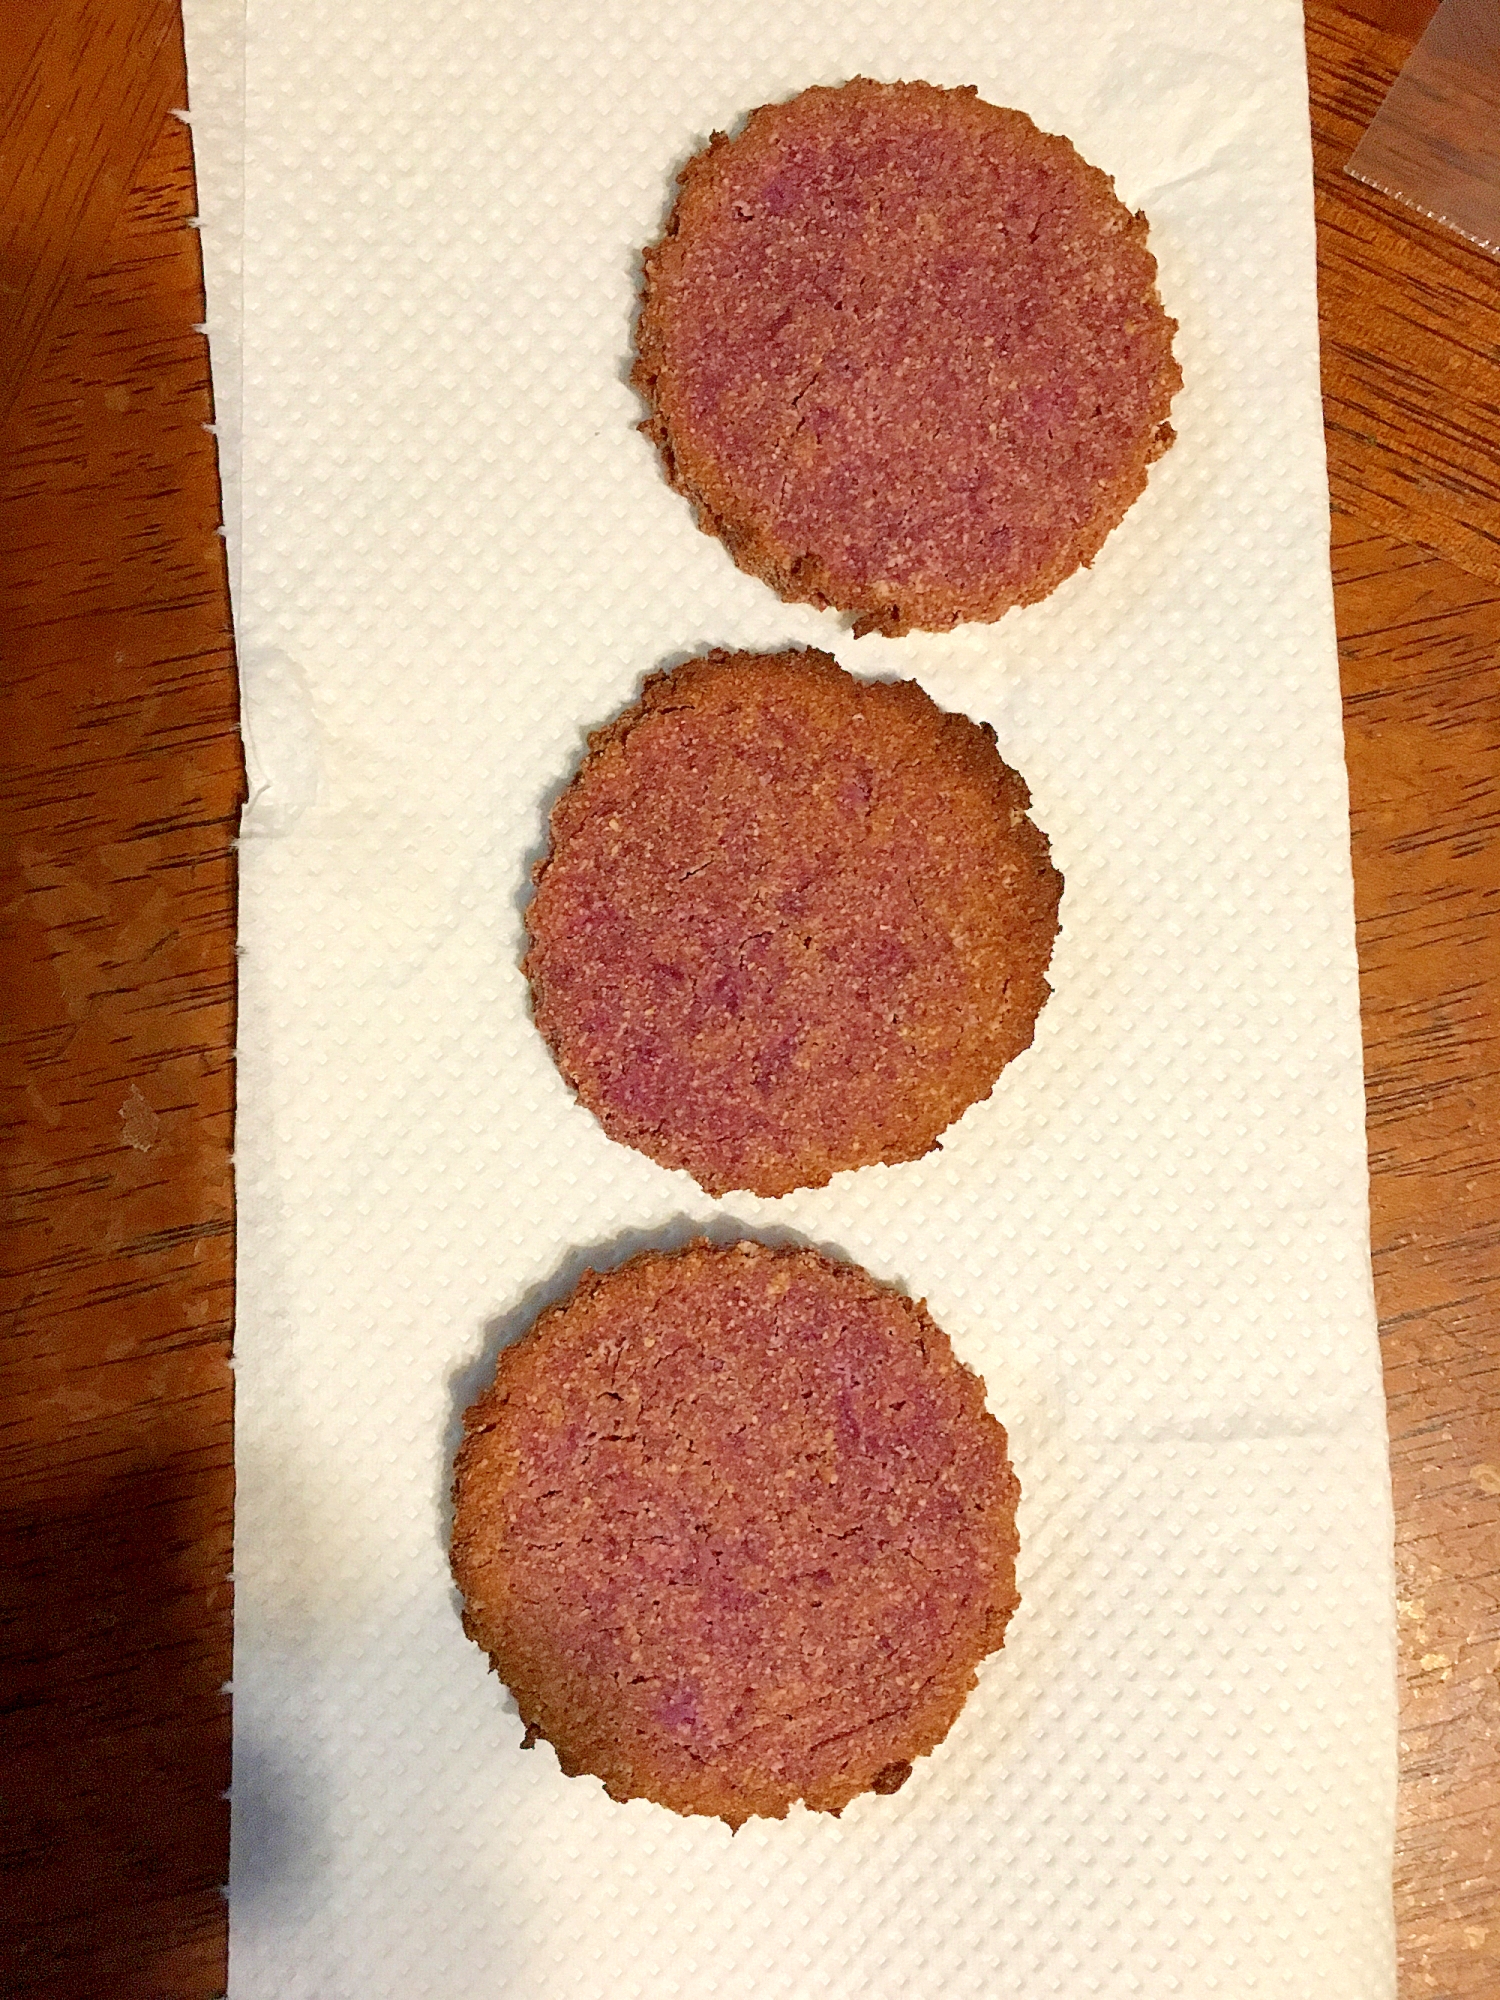 【グルテンフリー】紫芋クッキー ココナツ風味